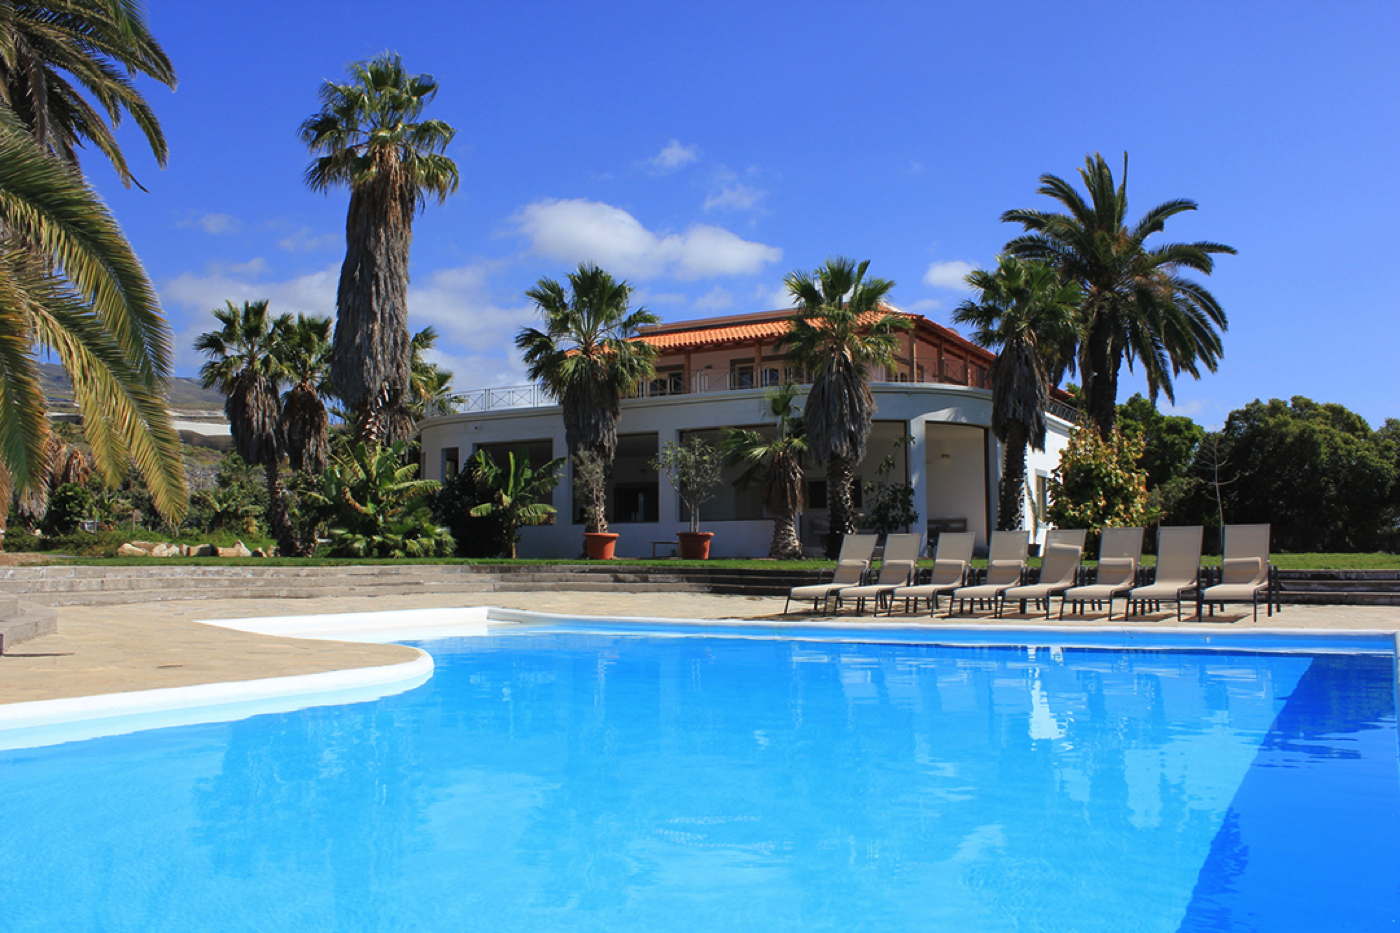 Ferienvilla Vista Mare mieten mit Pool und Meerblick auf Teneriffa Kanaren Spanien